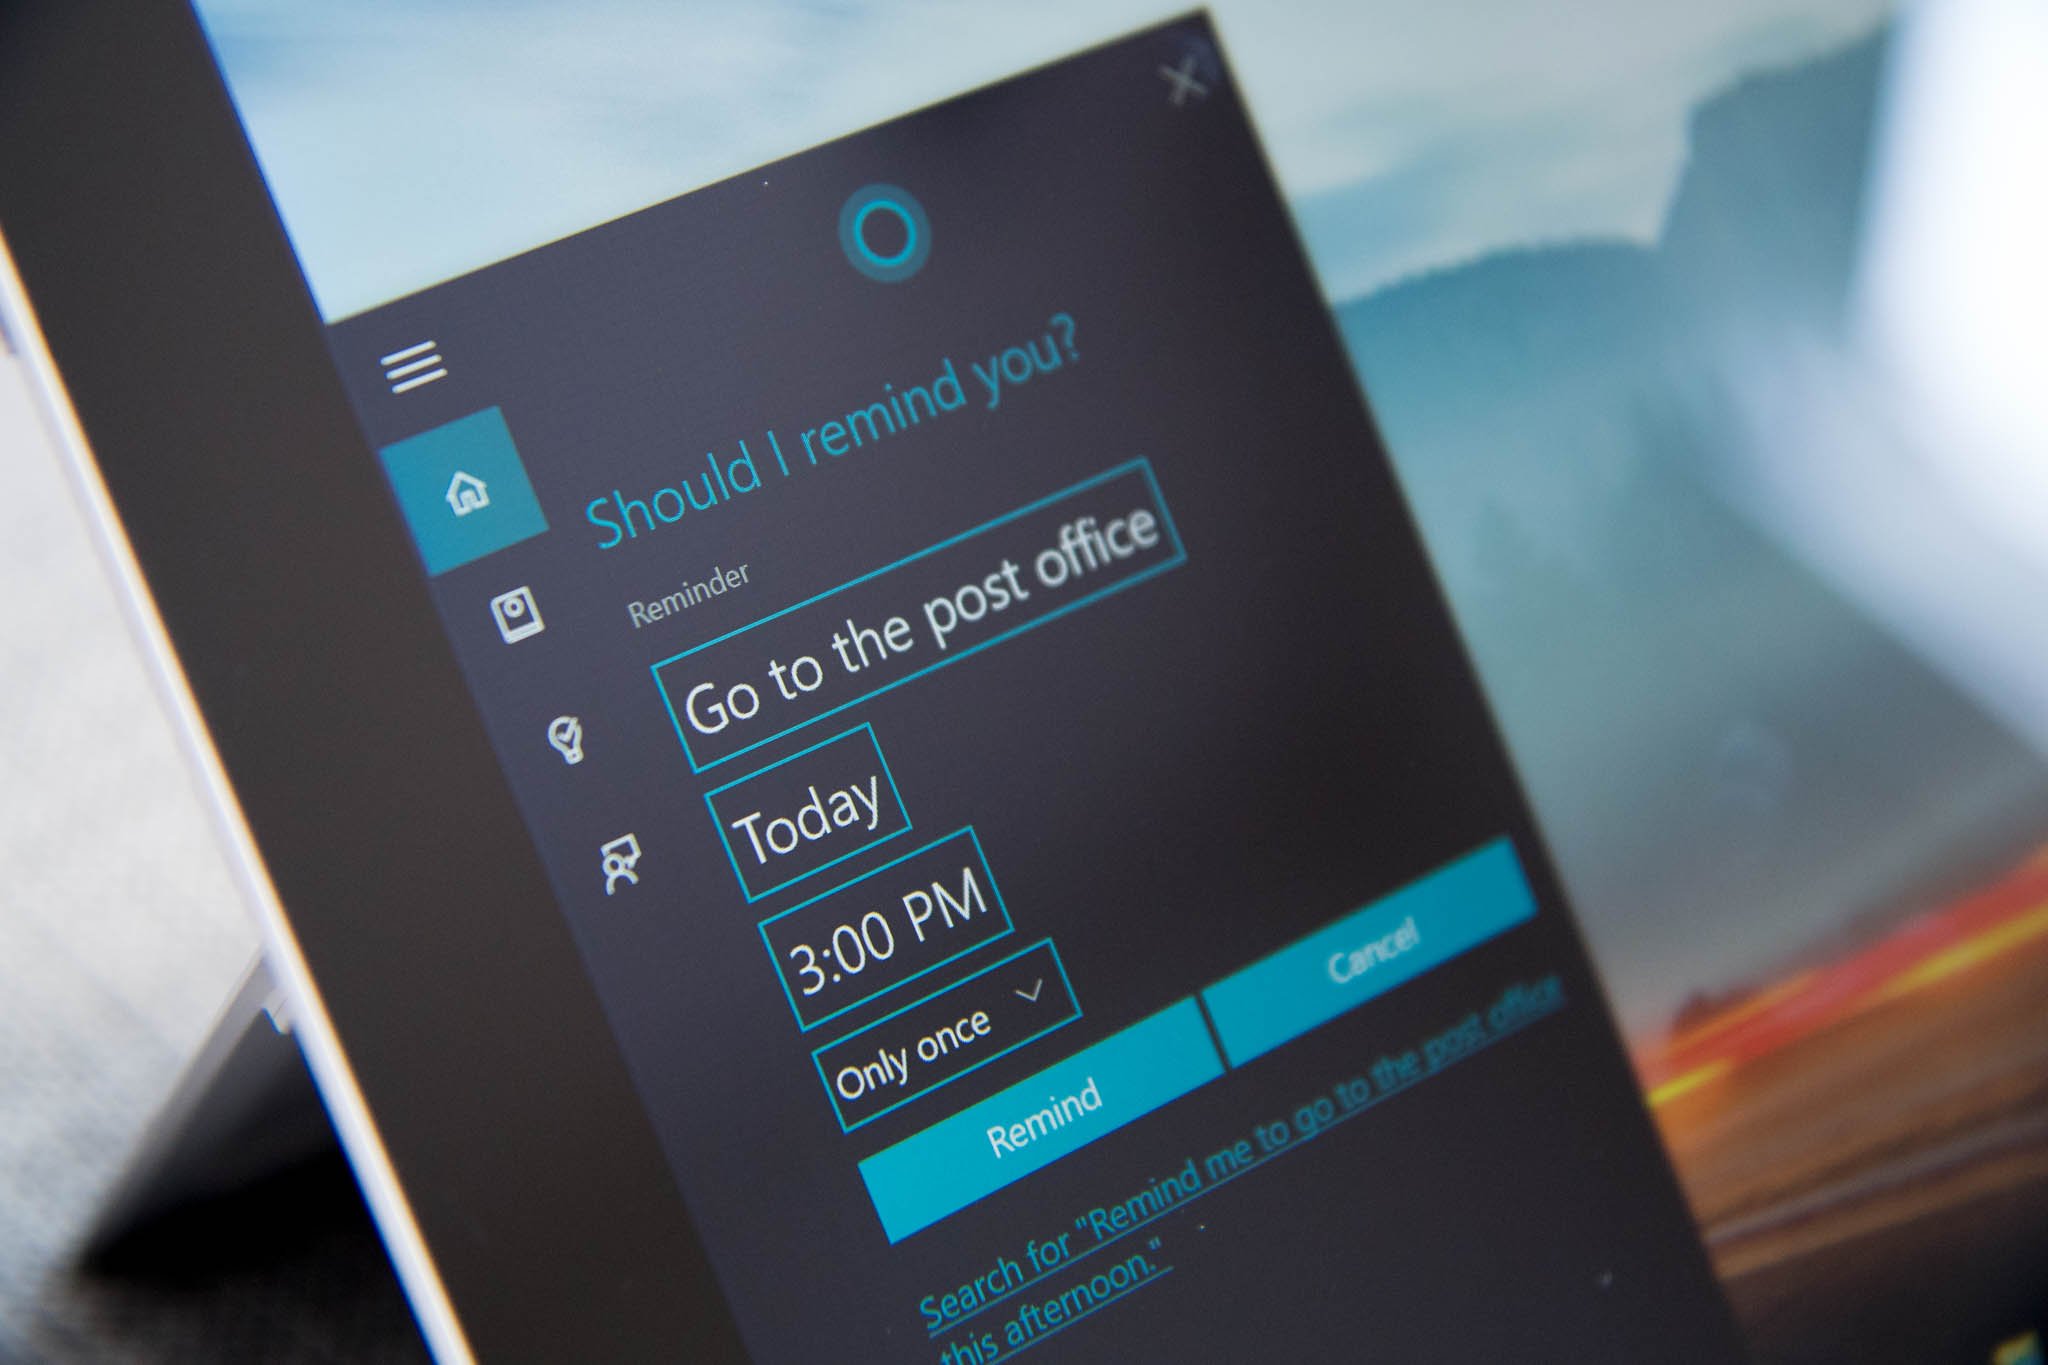 How to setup and use Cortana on Windows 10 PC